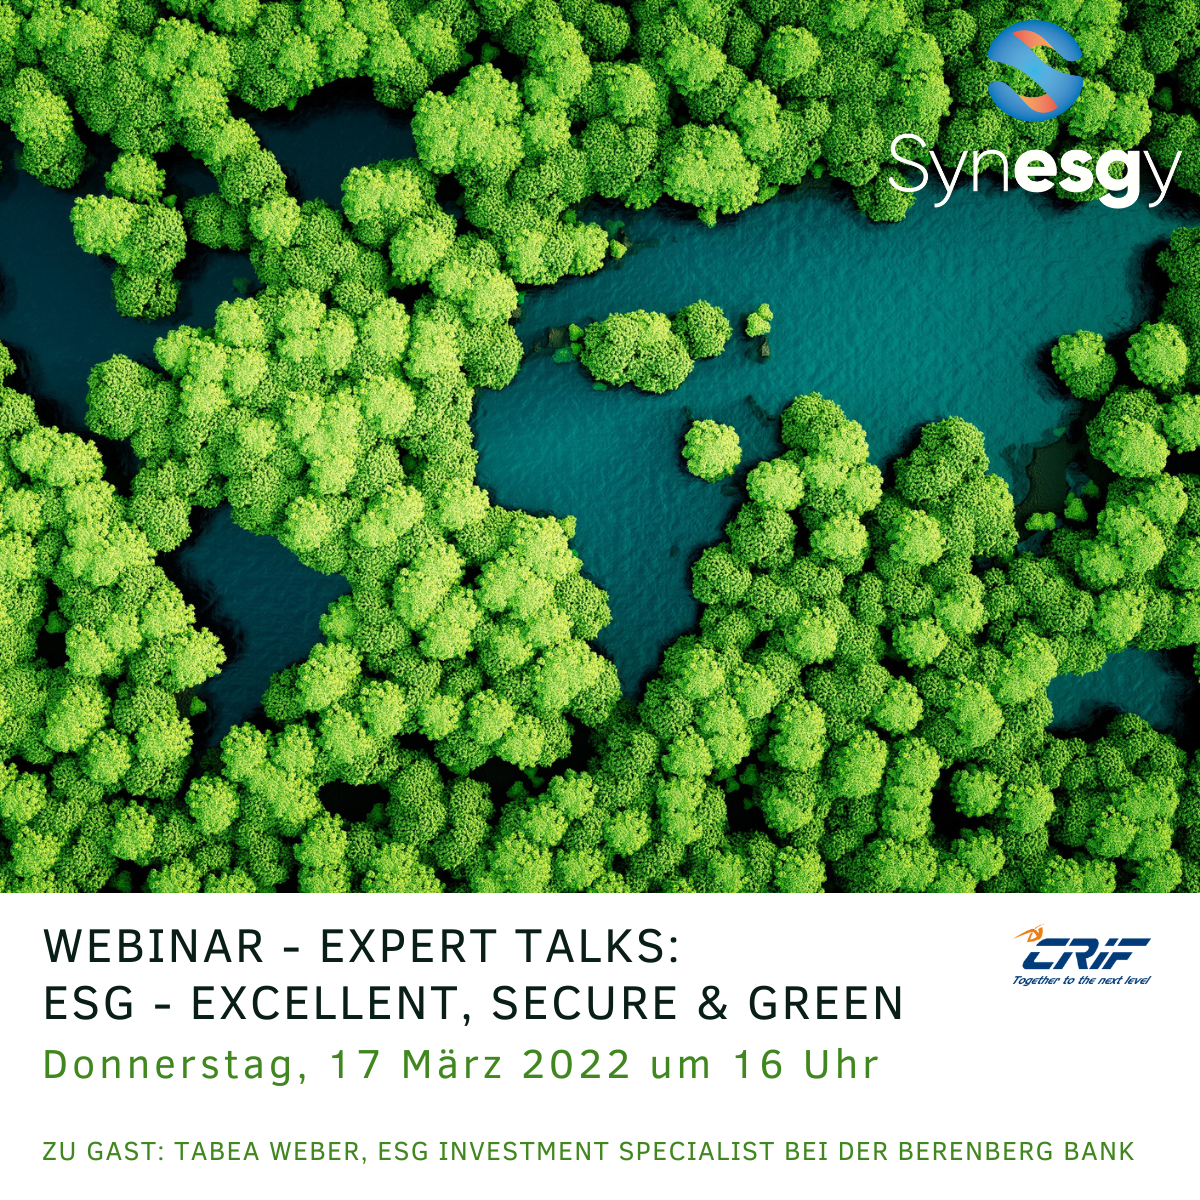 LinkedIN Expert Talks ESG - Excellent, Secure & Green.png